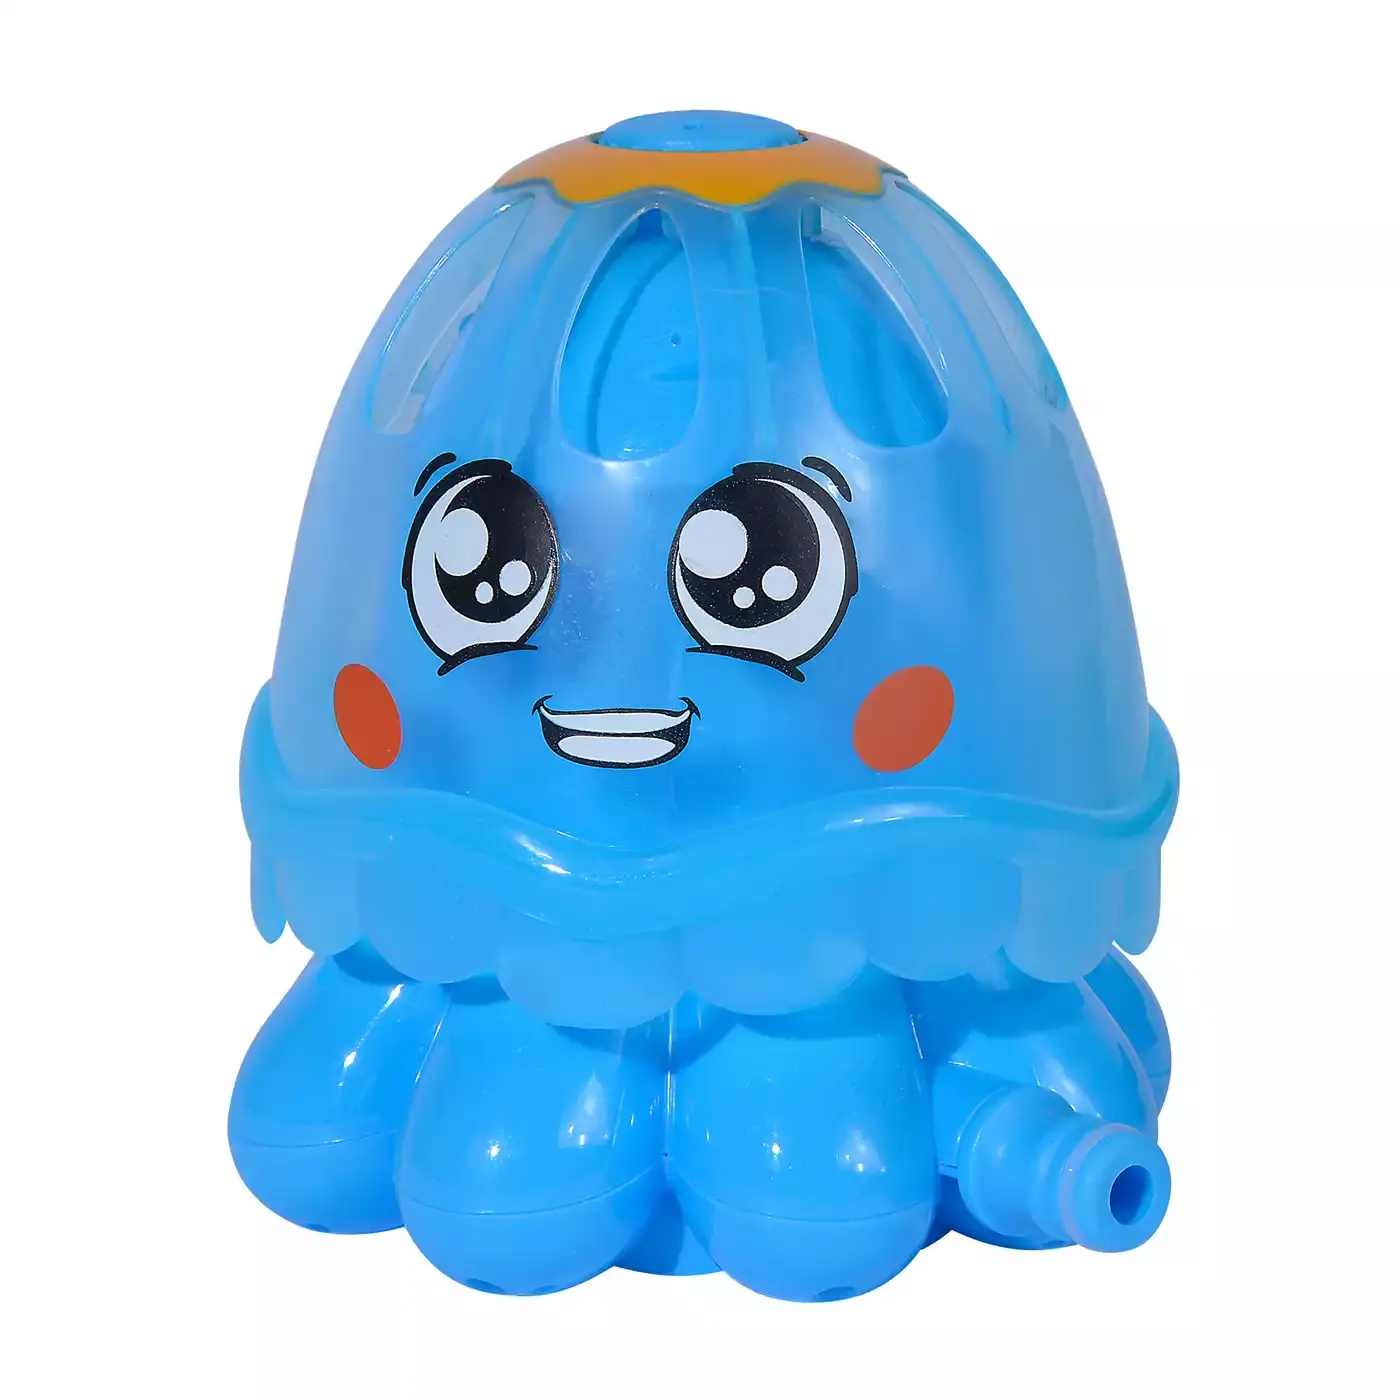 Jellyfisch Wassersprinkler Simba Blau 2000582607800 1